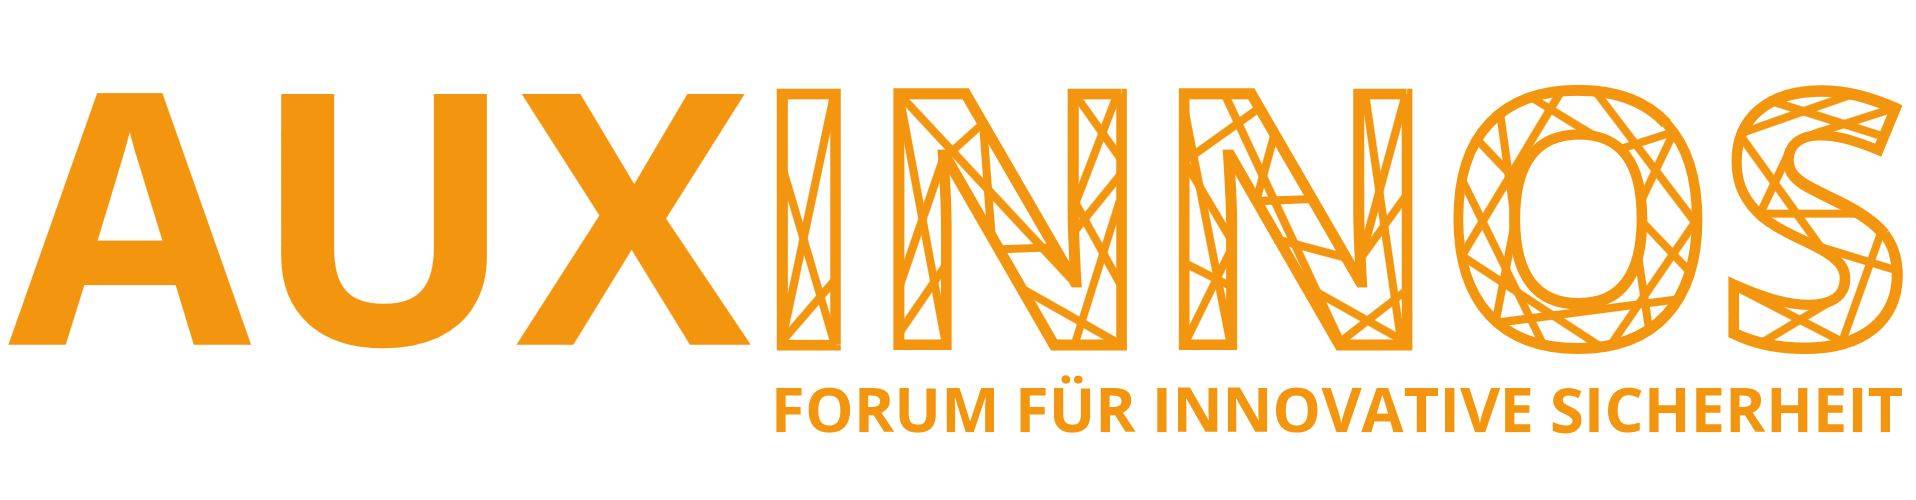 AUXINNOS 2019 Forum für innovative Sicherheit